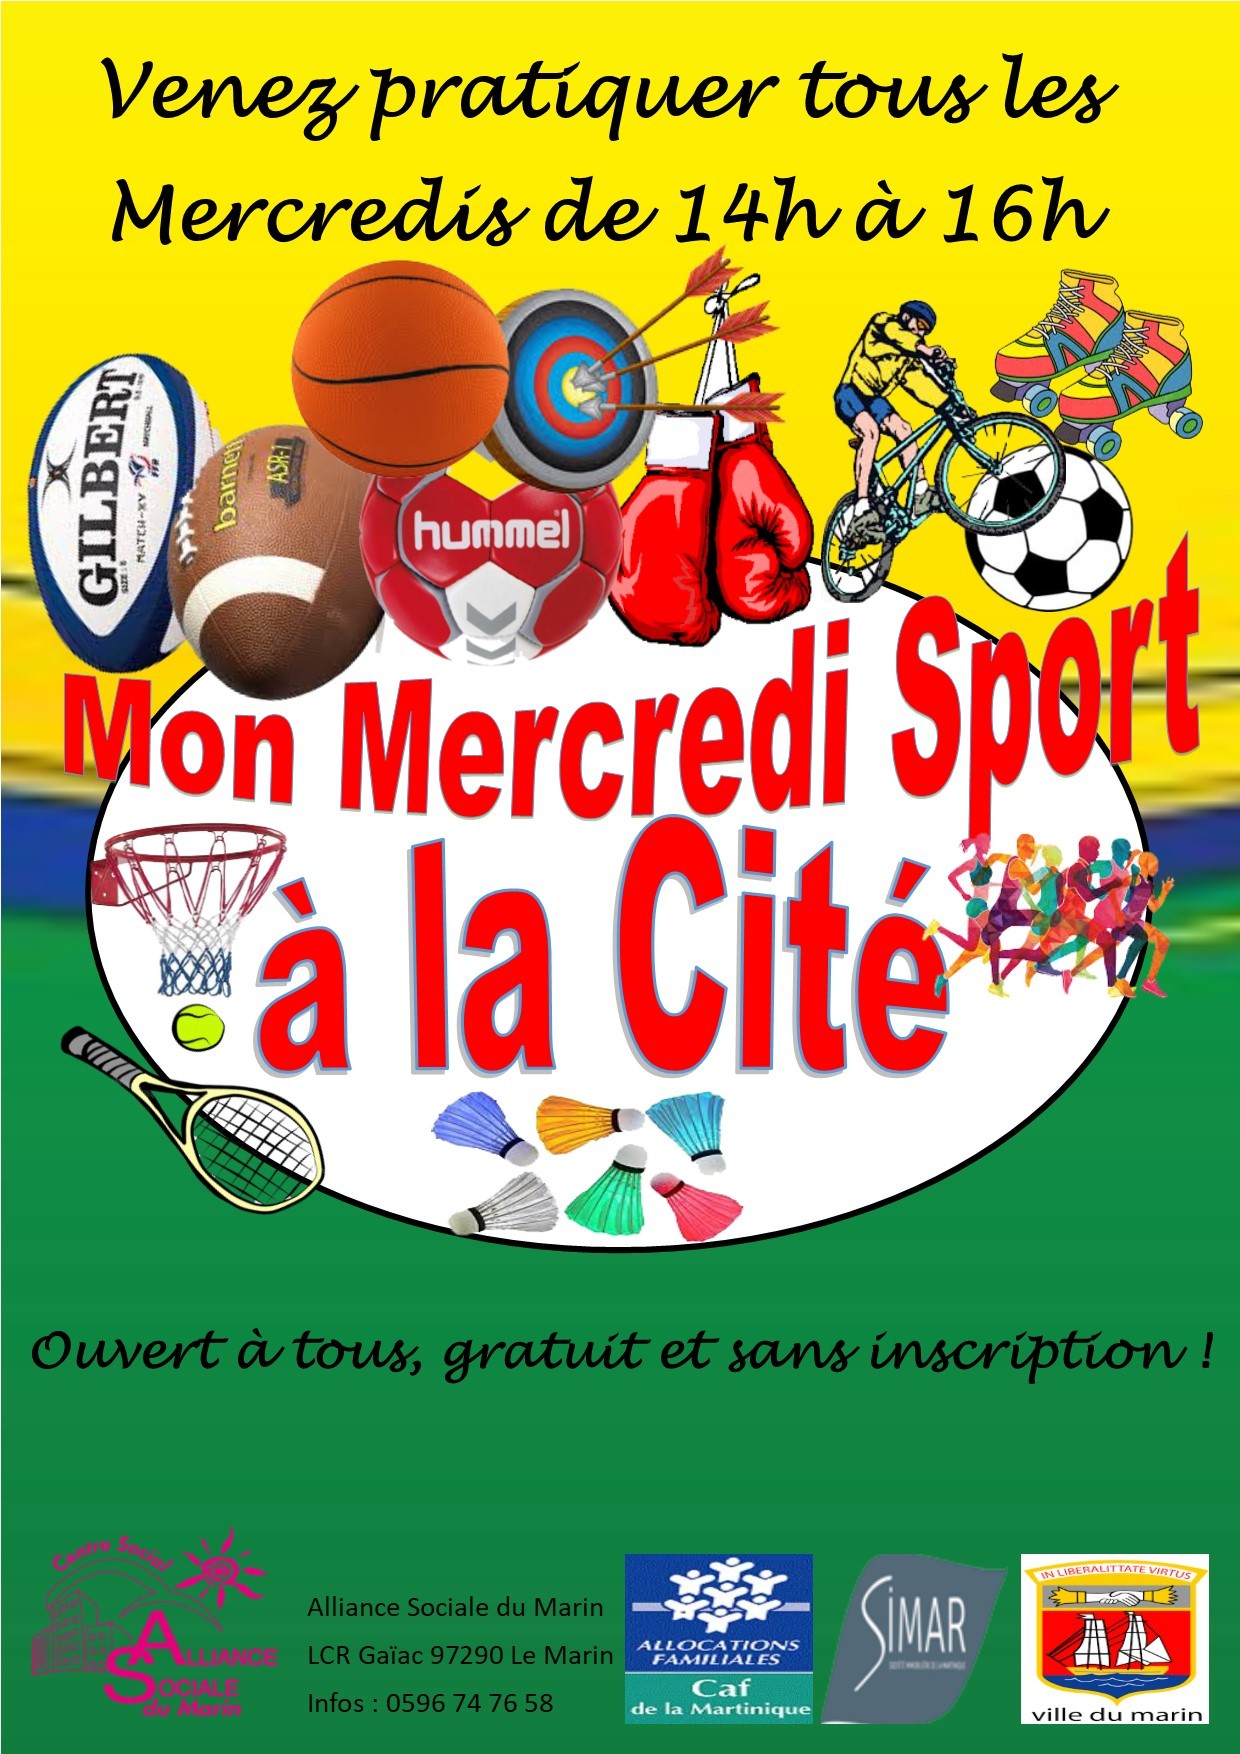 Mon Mercredi Sport à la Cité